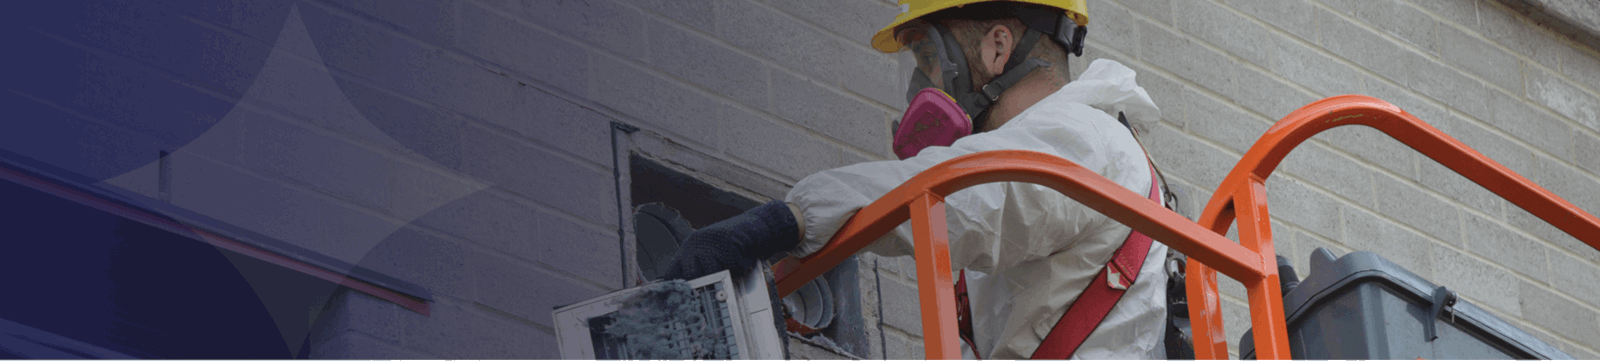 Vous cherchez une entreprise pour effectuer le nettoyage de vos conduits de ventilation? Airmatic Ventilation Inc. à McMasterville, Brossard et Montréal nettoiera en profondeur tous vos conduits de ventilation résidentielle ou commerciale.